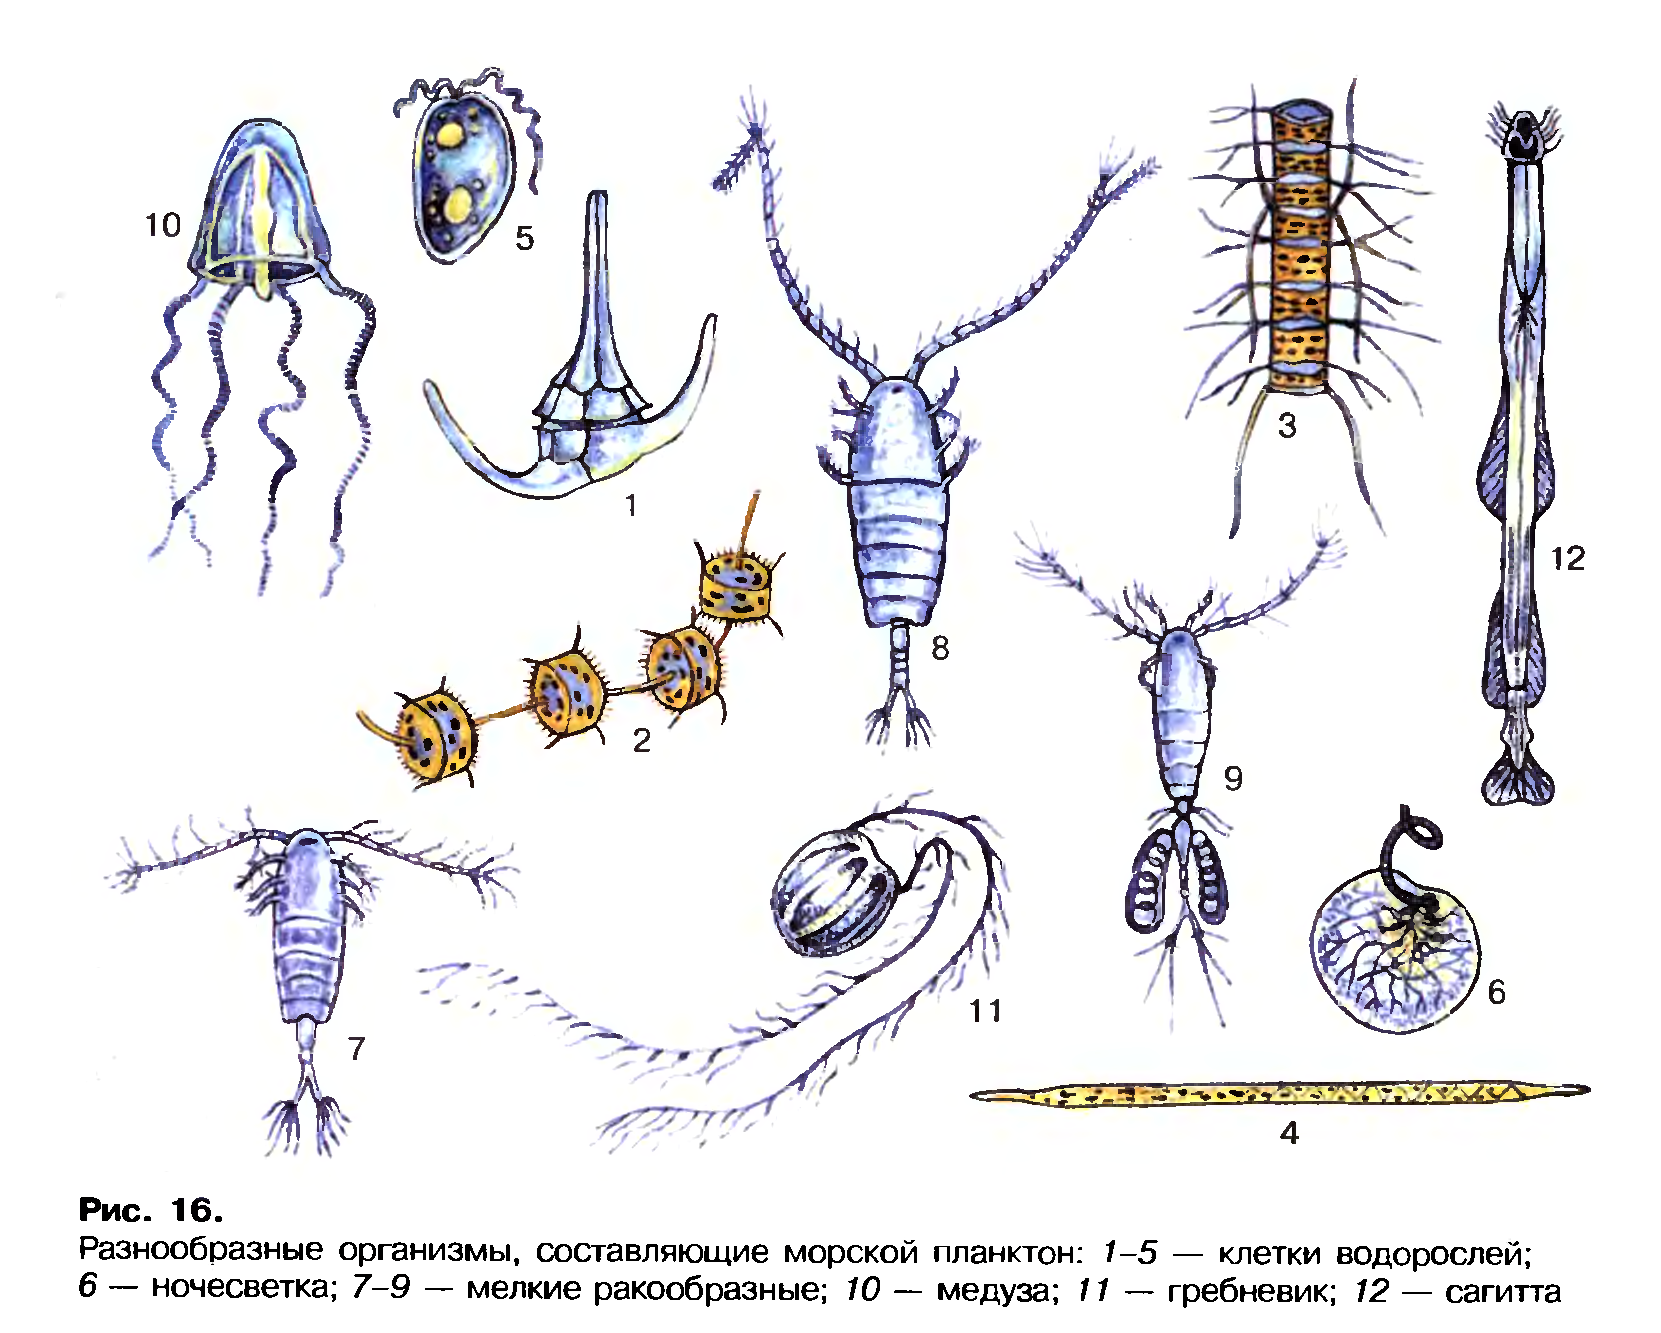 Кишечник беспозвоночные. Зоопланктоны ракообразные. Планктон фитопланктон зоопланктон бентос. Планктонные ракообразные представители. Морской планктон рачок.